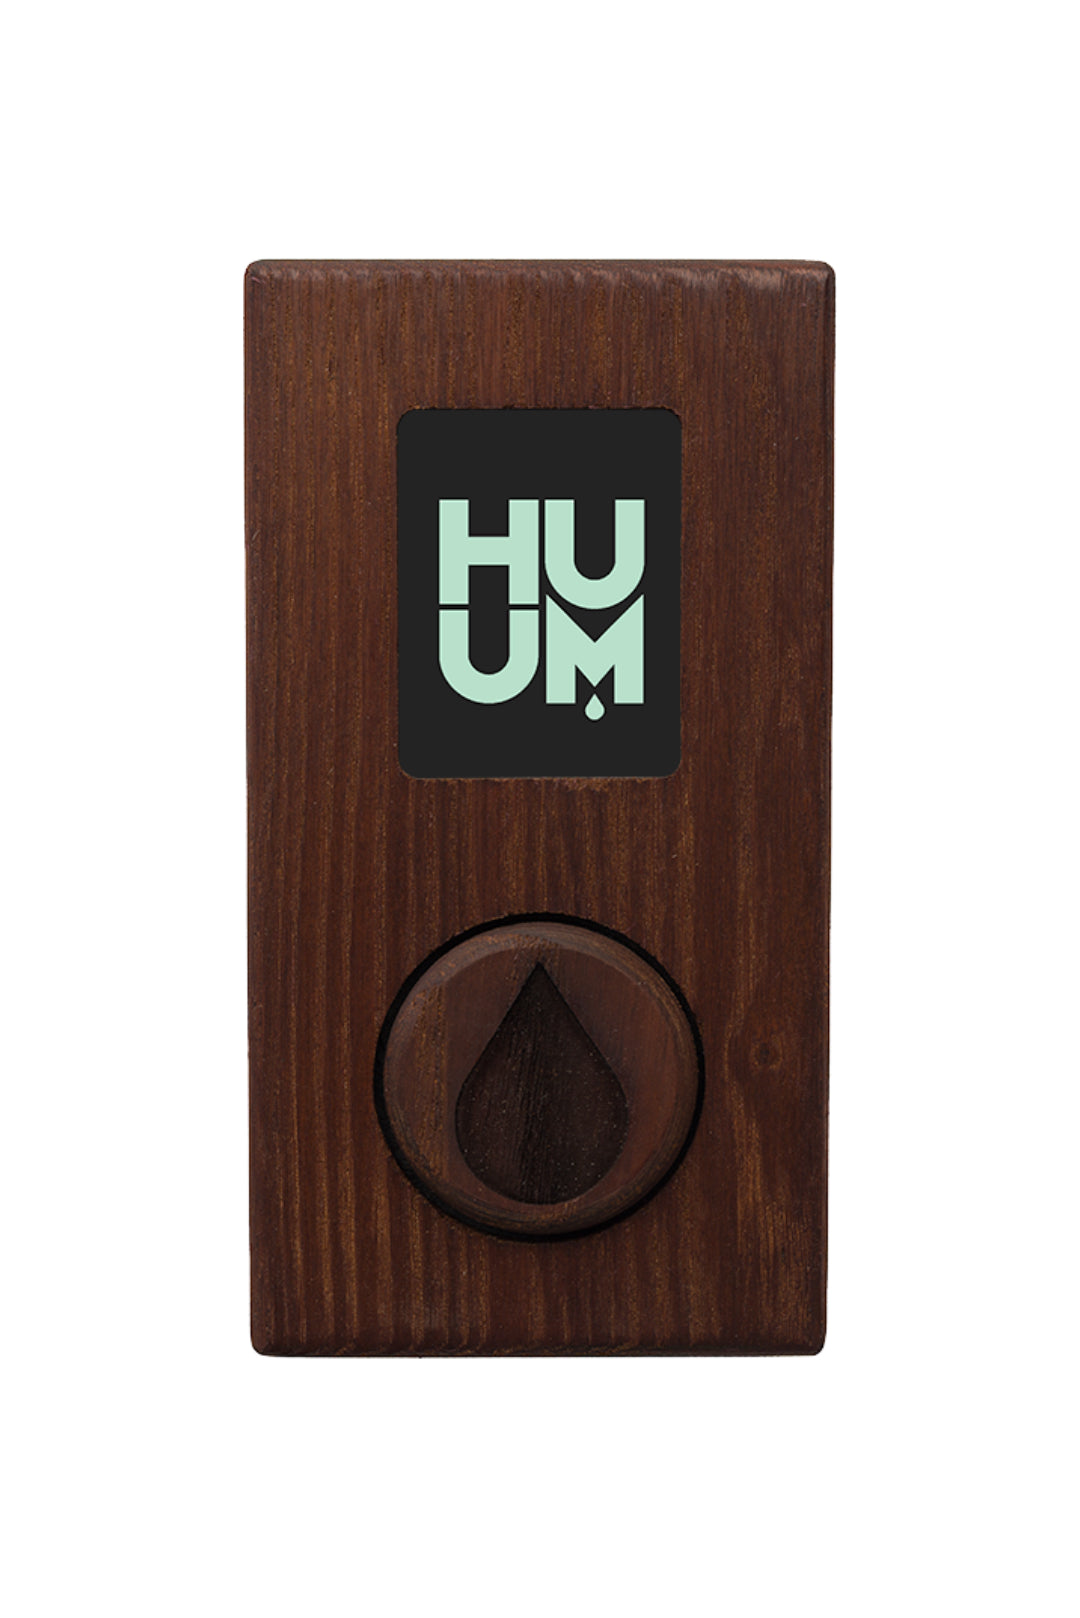 HUUM sauna control unit wifi in wood